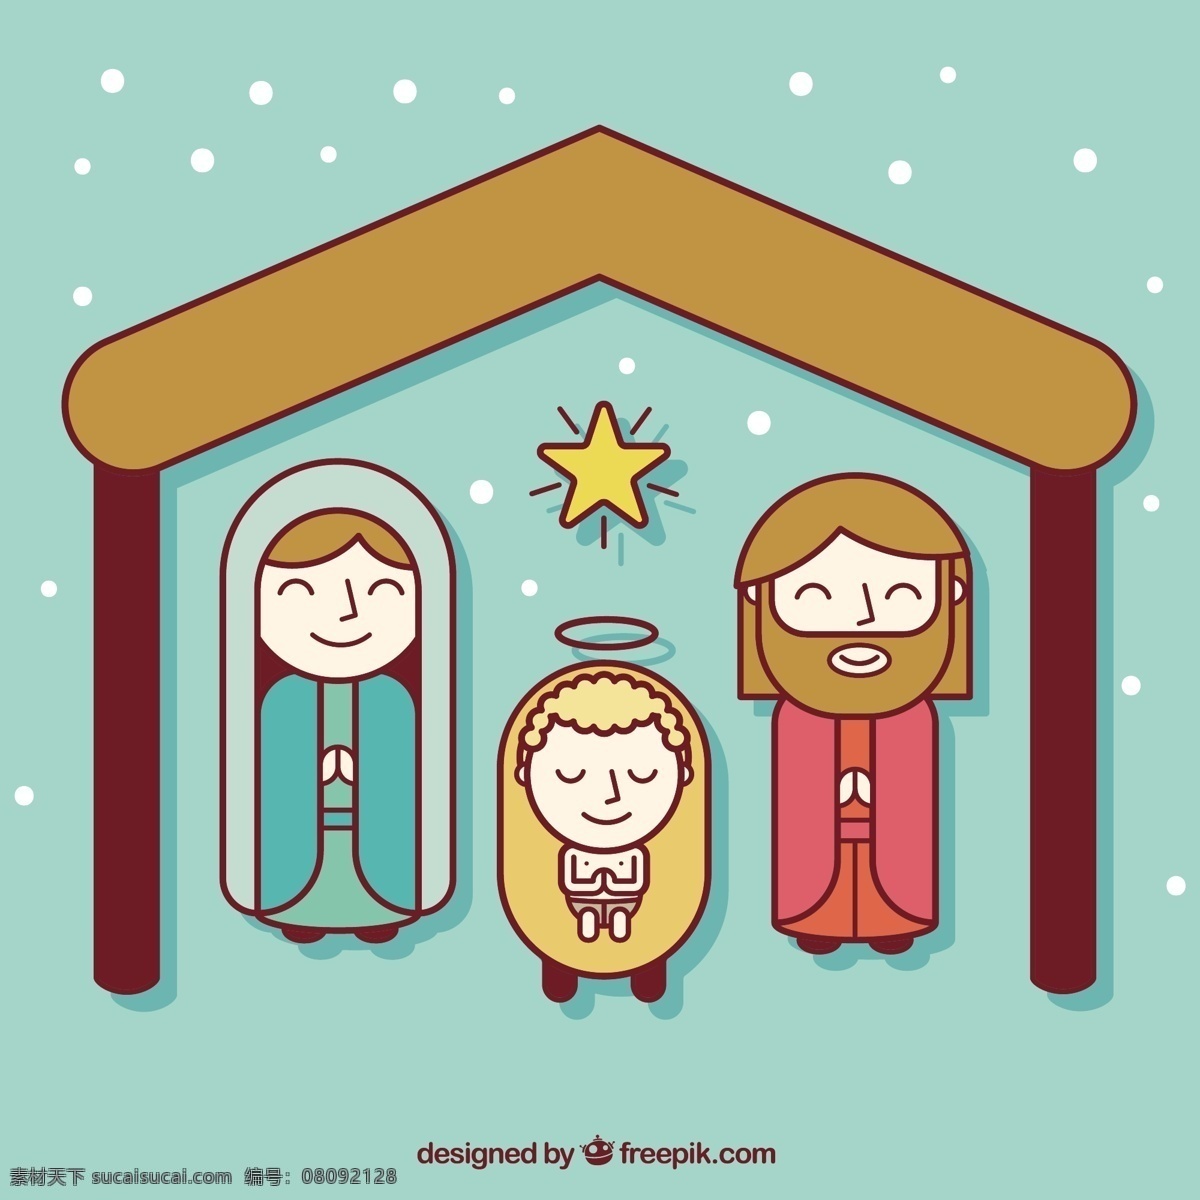 基督 降生 扁平化 图标 圣诞宝贝 明星卡 家庭 动画 平面 耶稣 圣诞卡 圣诞 孩子 雪花 假日 晚上 插画 平面图标 神的诞生 青色 天蓝色